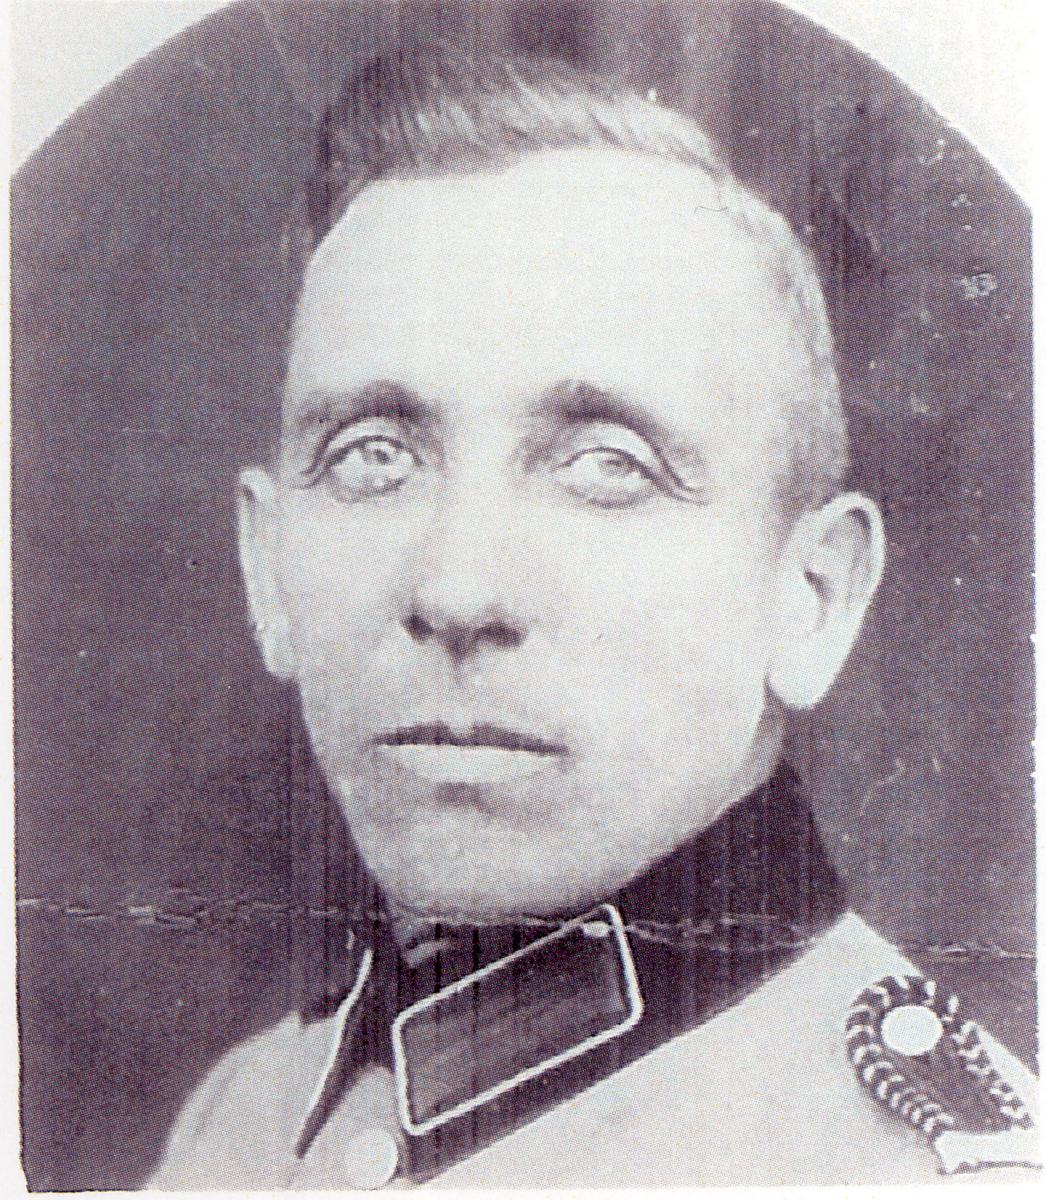 Former Branch President Emil Skrotzki